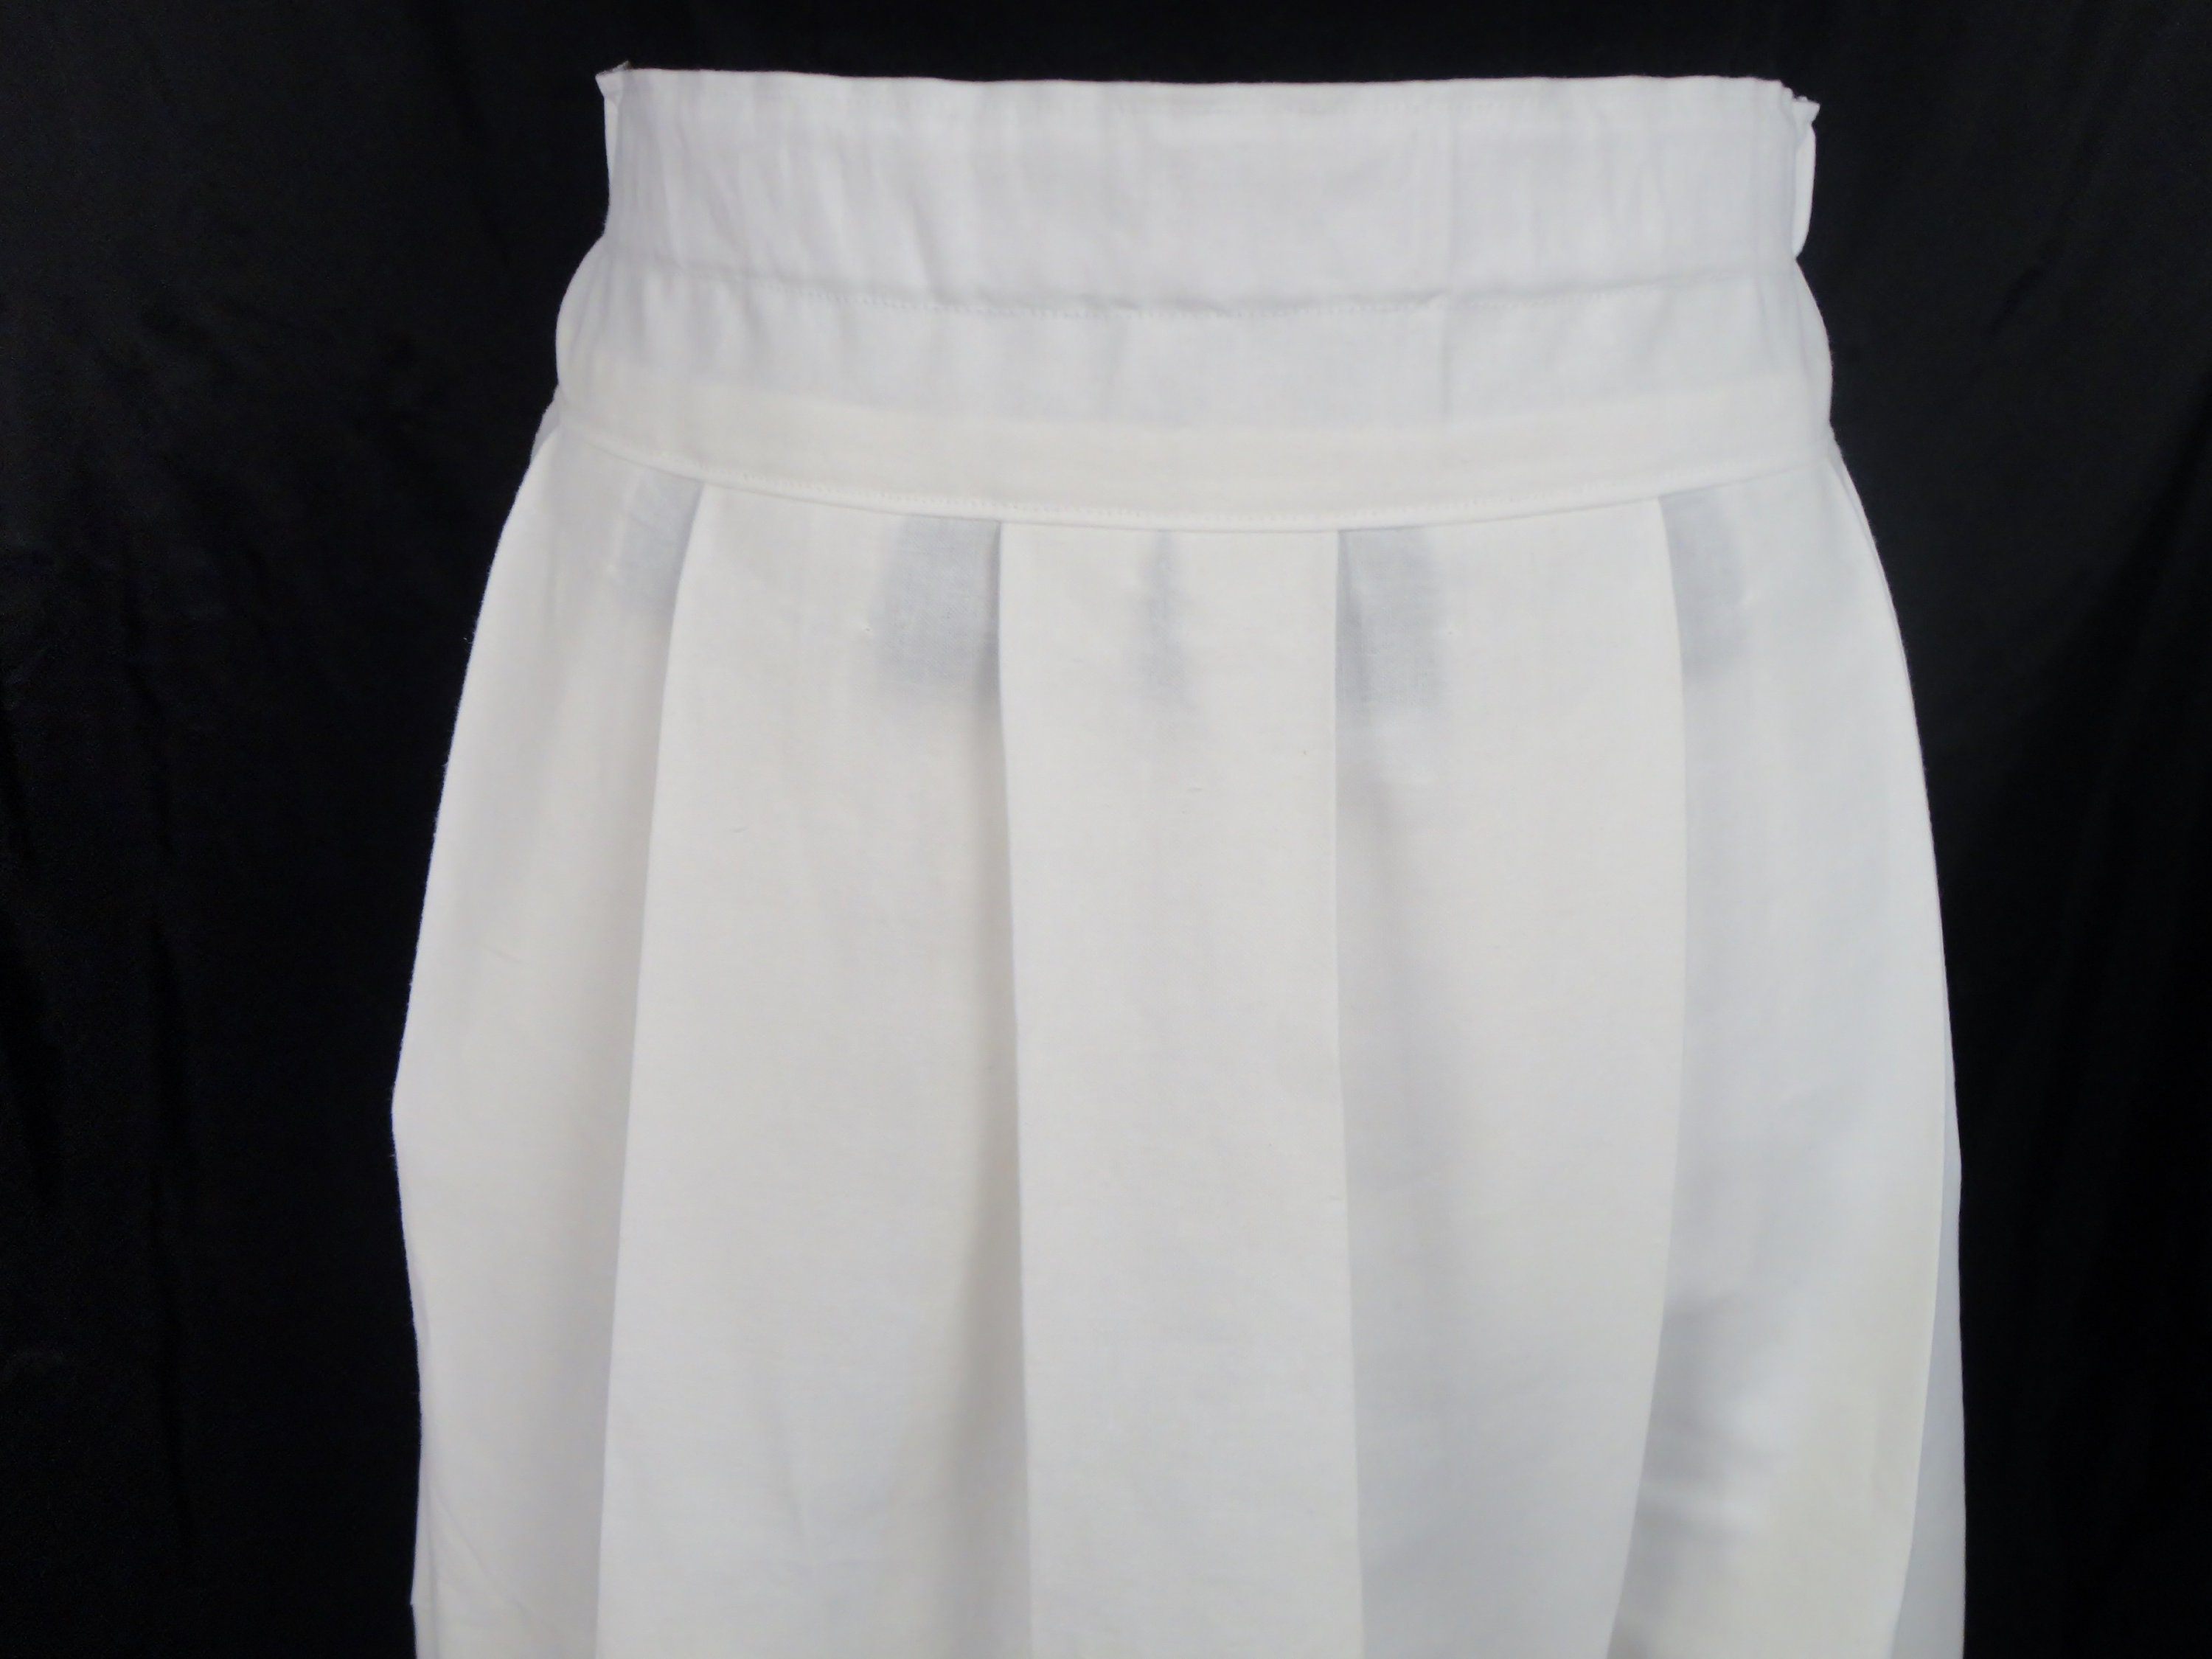 White pleated historical drawstring skirt renaissance skirt | Etsy